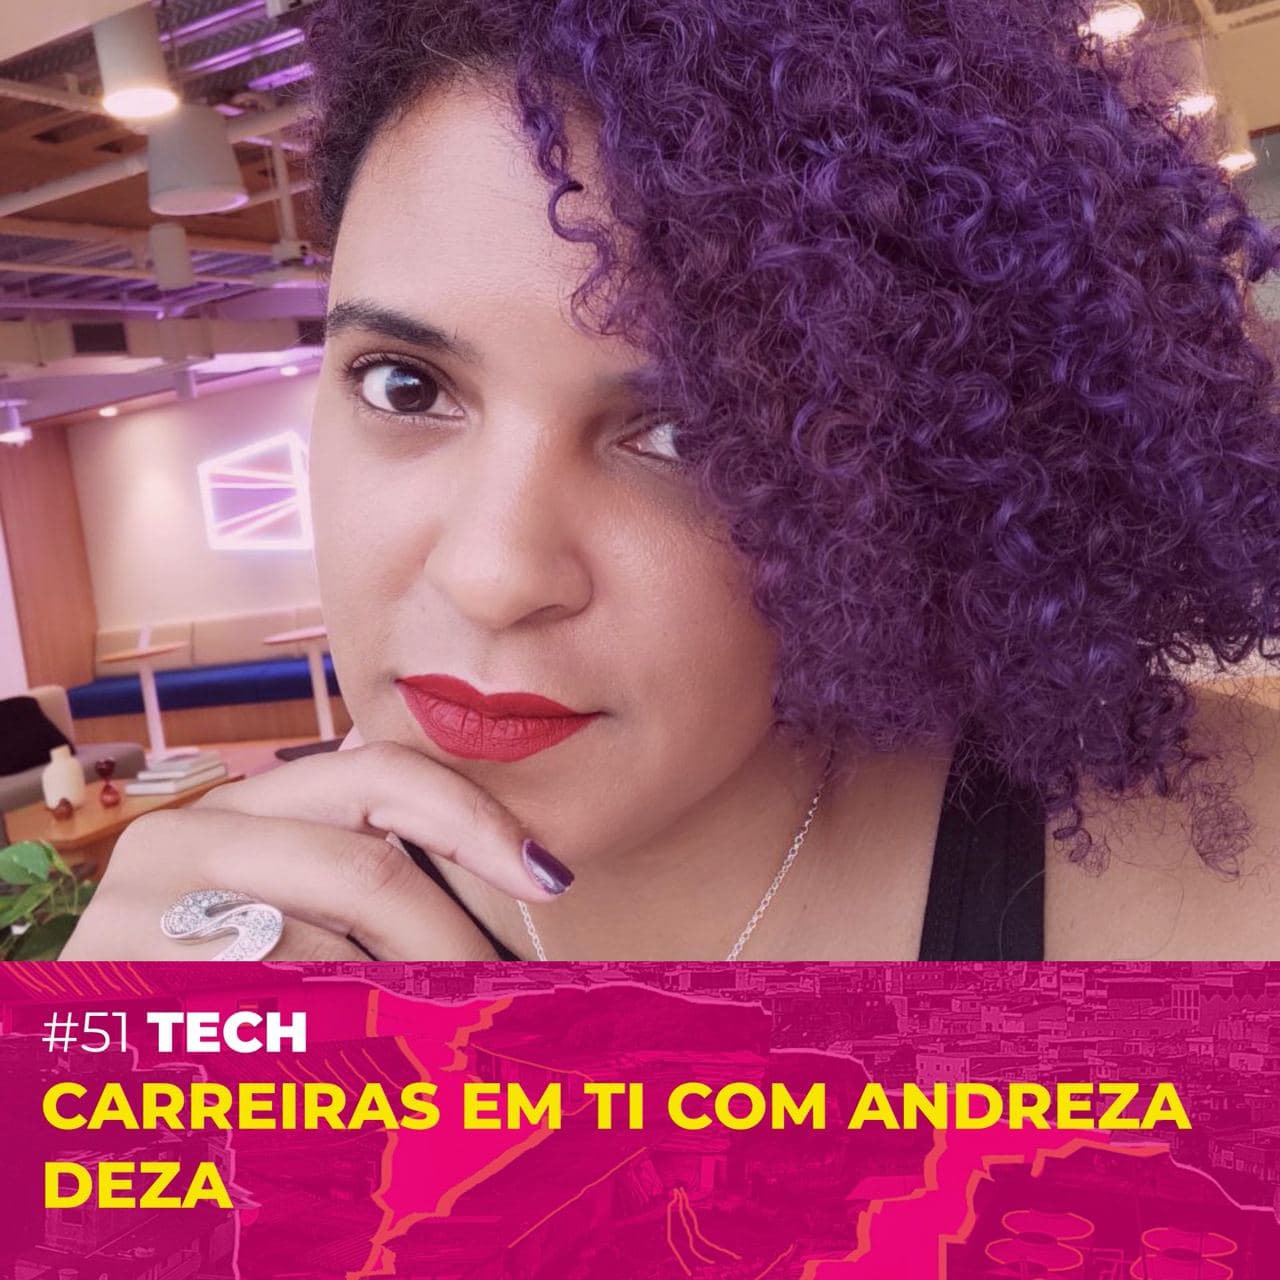 #51 - [Tech] Carreiras em TI com Andreza "Deza" Cover